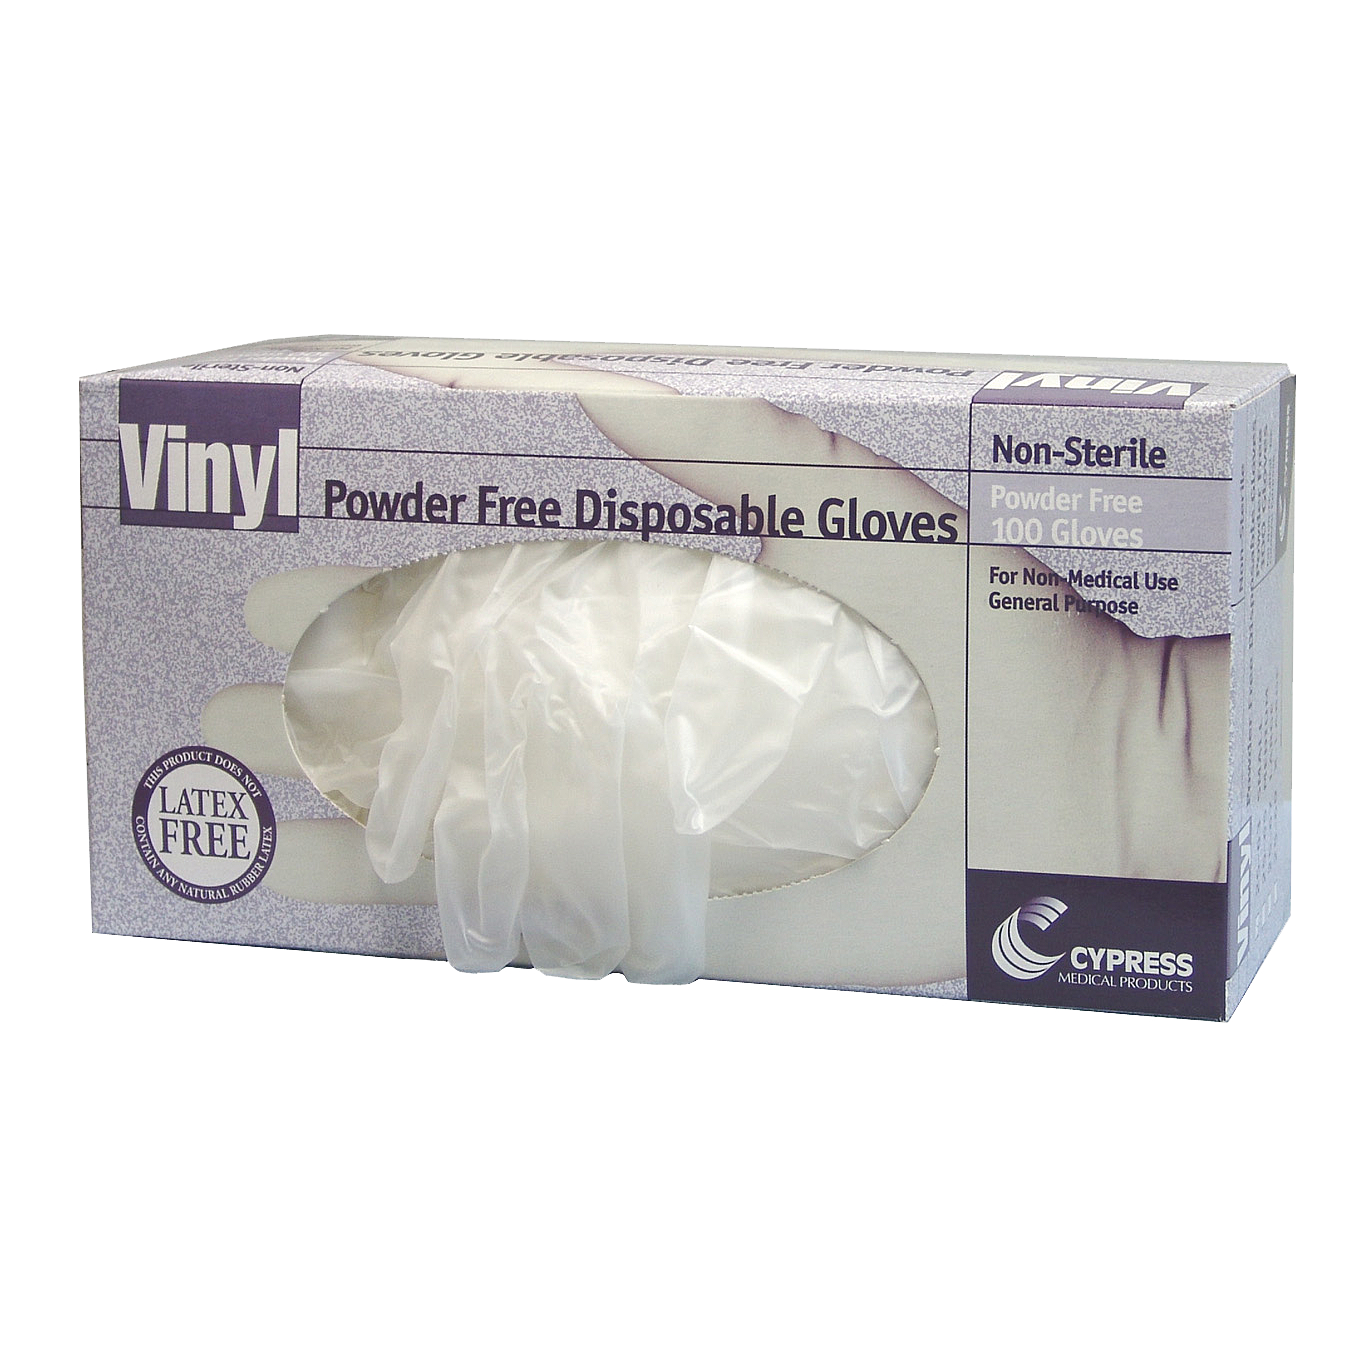 Industrial grade Vinyl Gloves